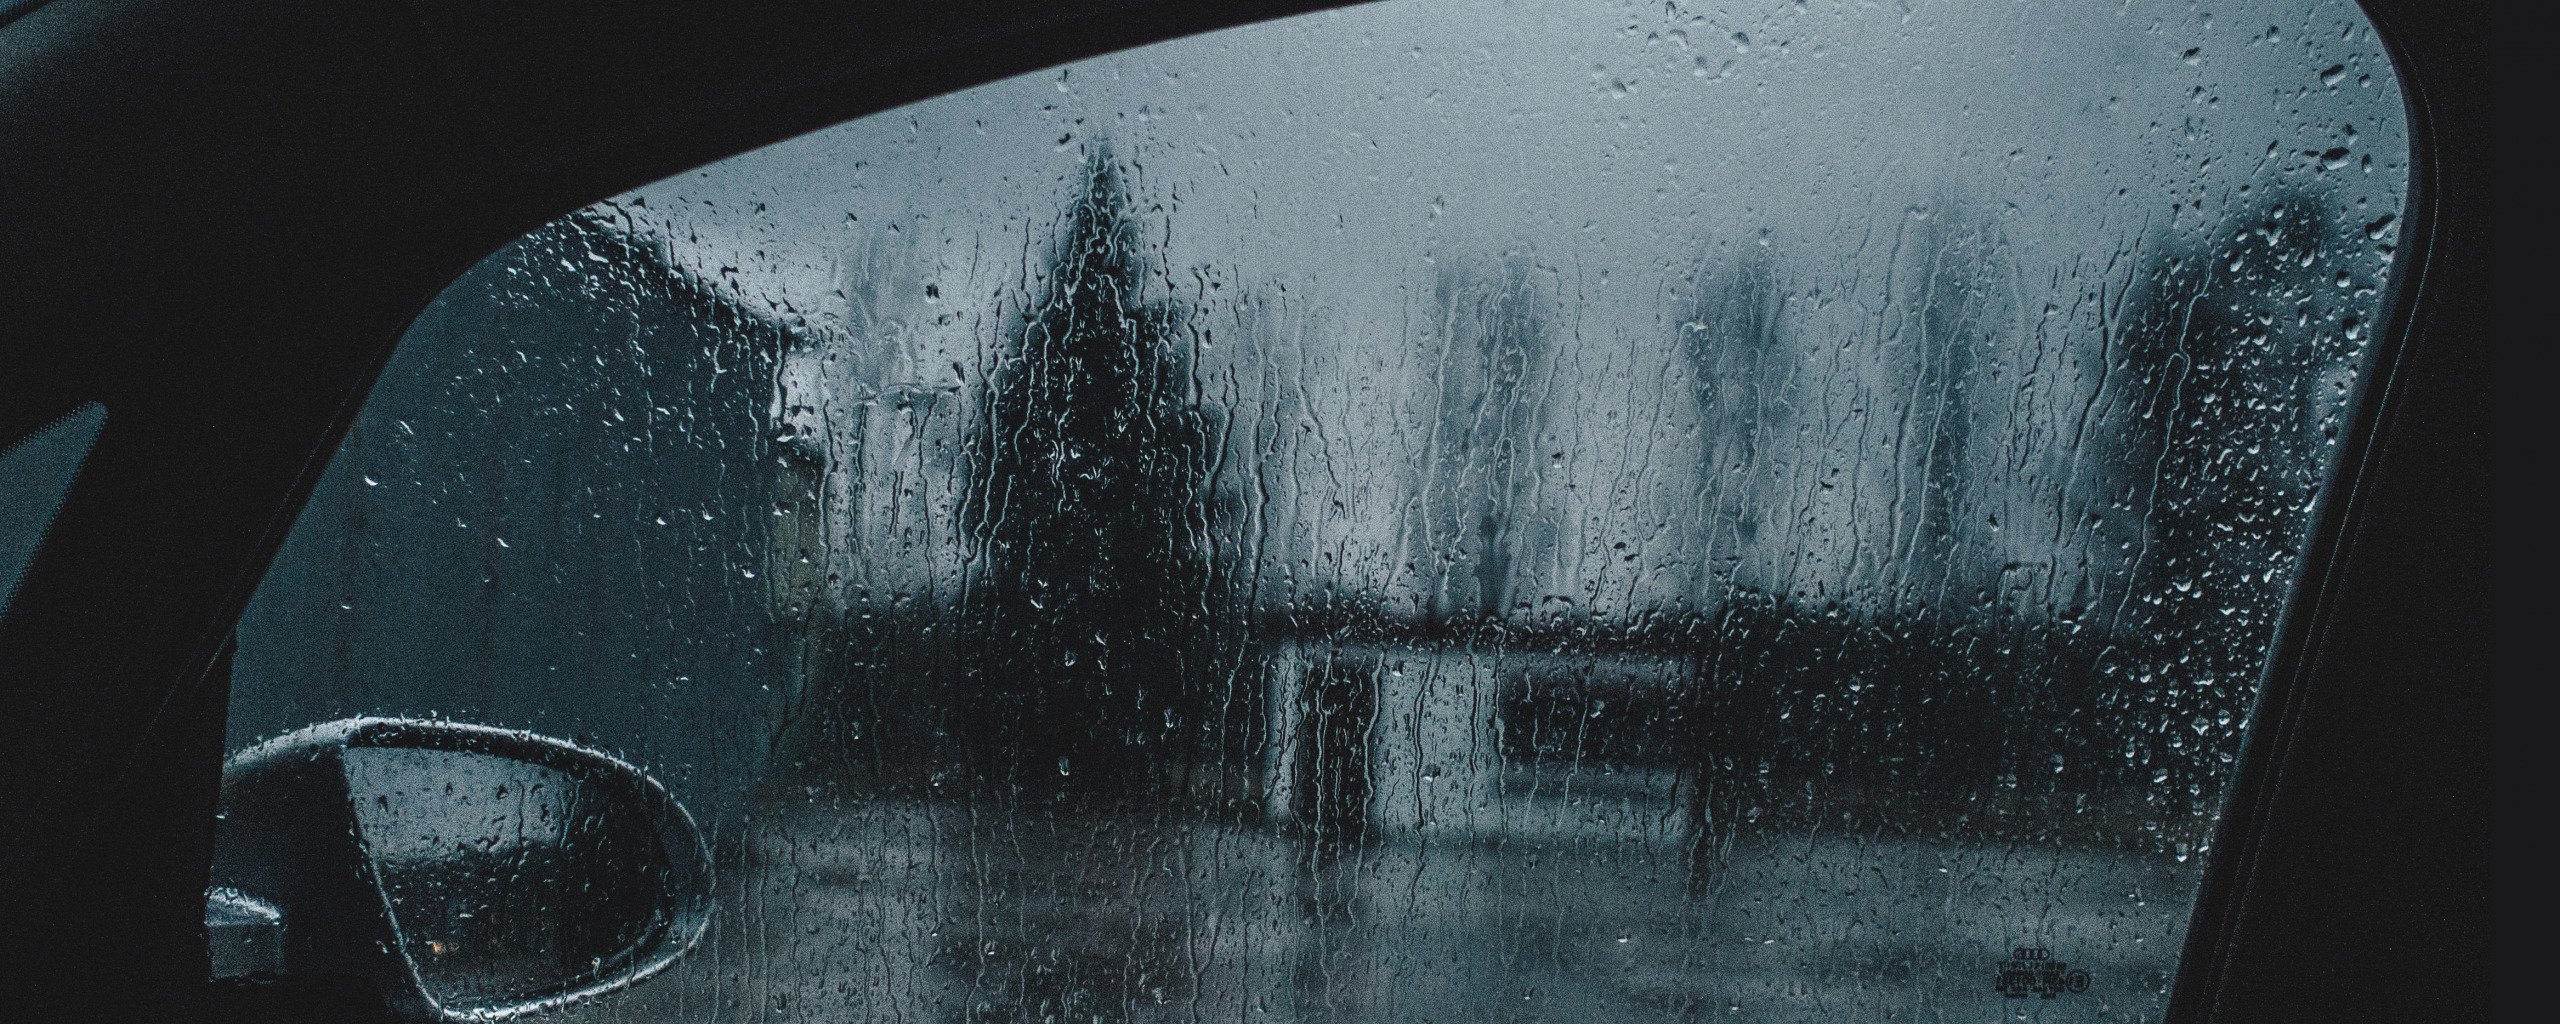 Мокрое стекло автомобиля. Дождь на окне машины. Дождь на стекле машины. Сквозь мокрое стекло.